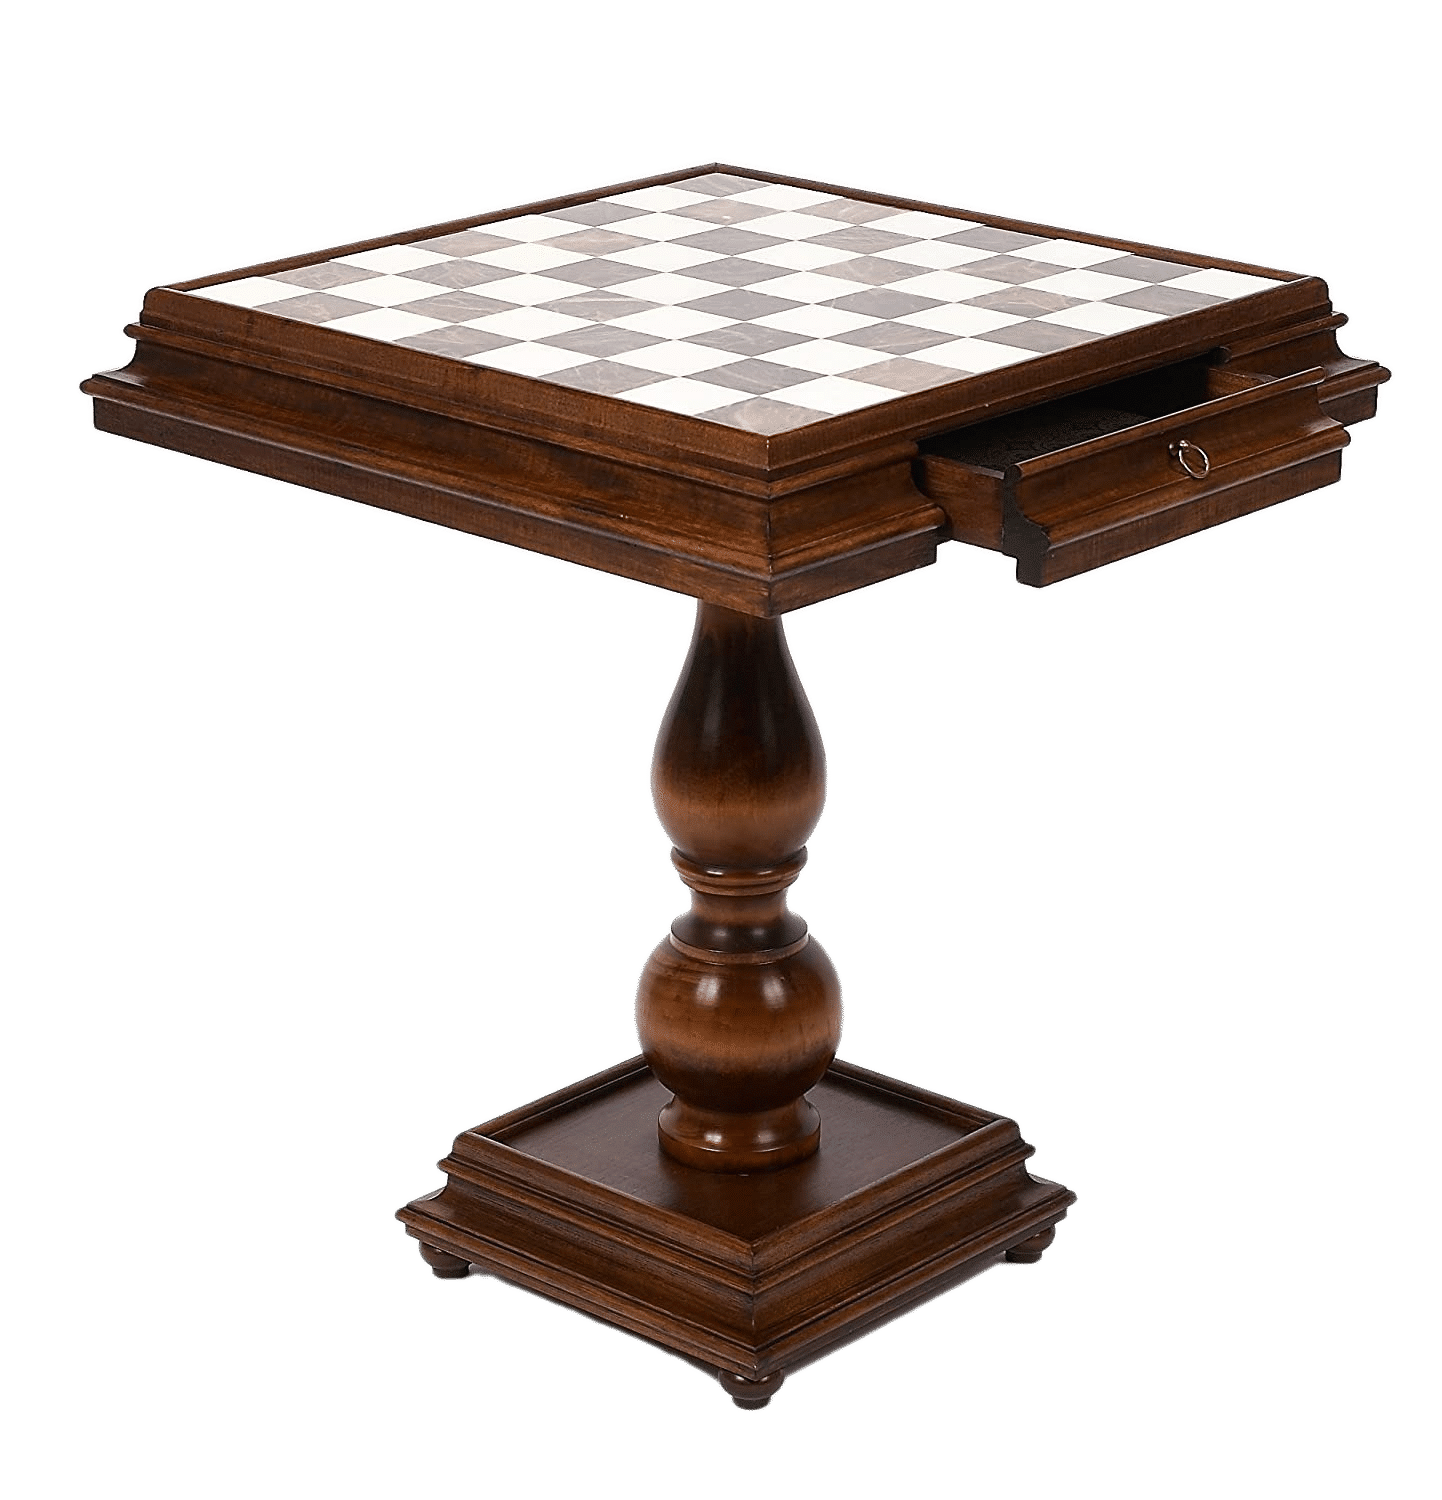 Jeu d'échecs - Brault & Bouthillier